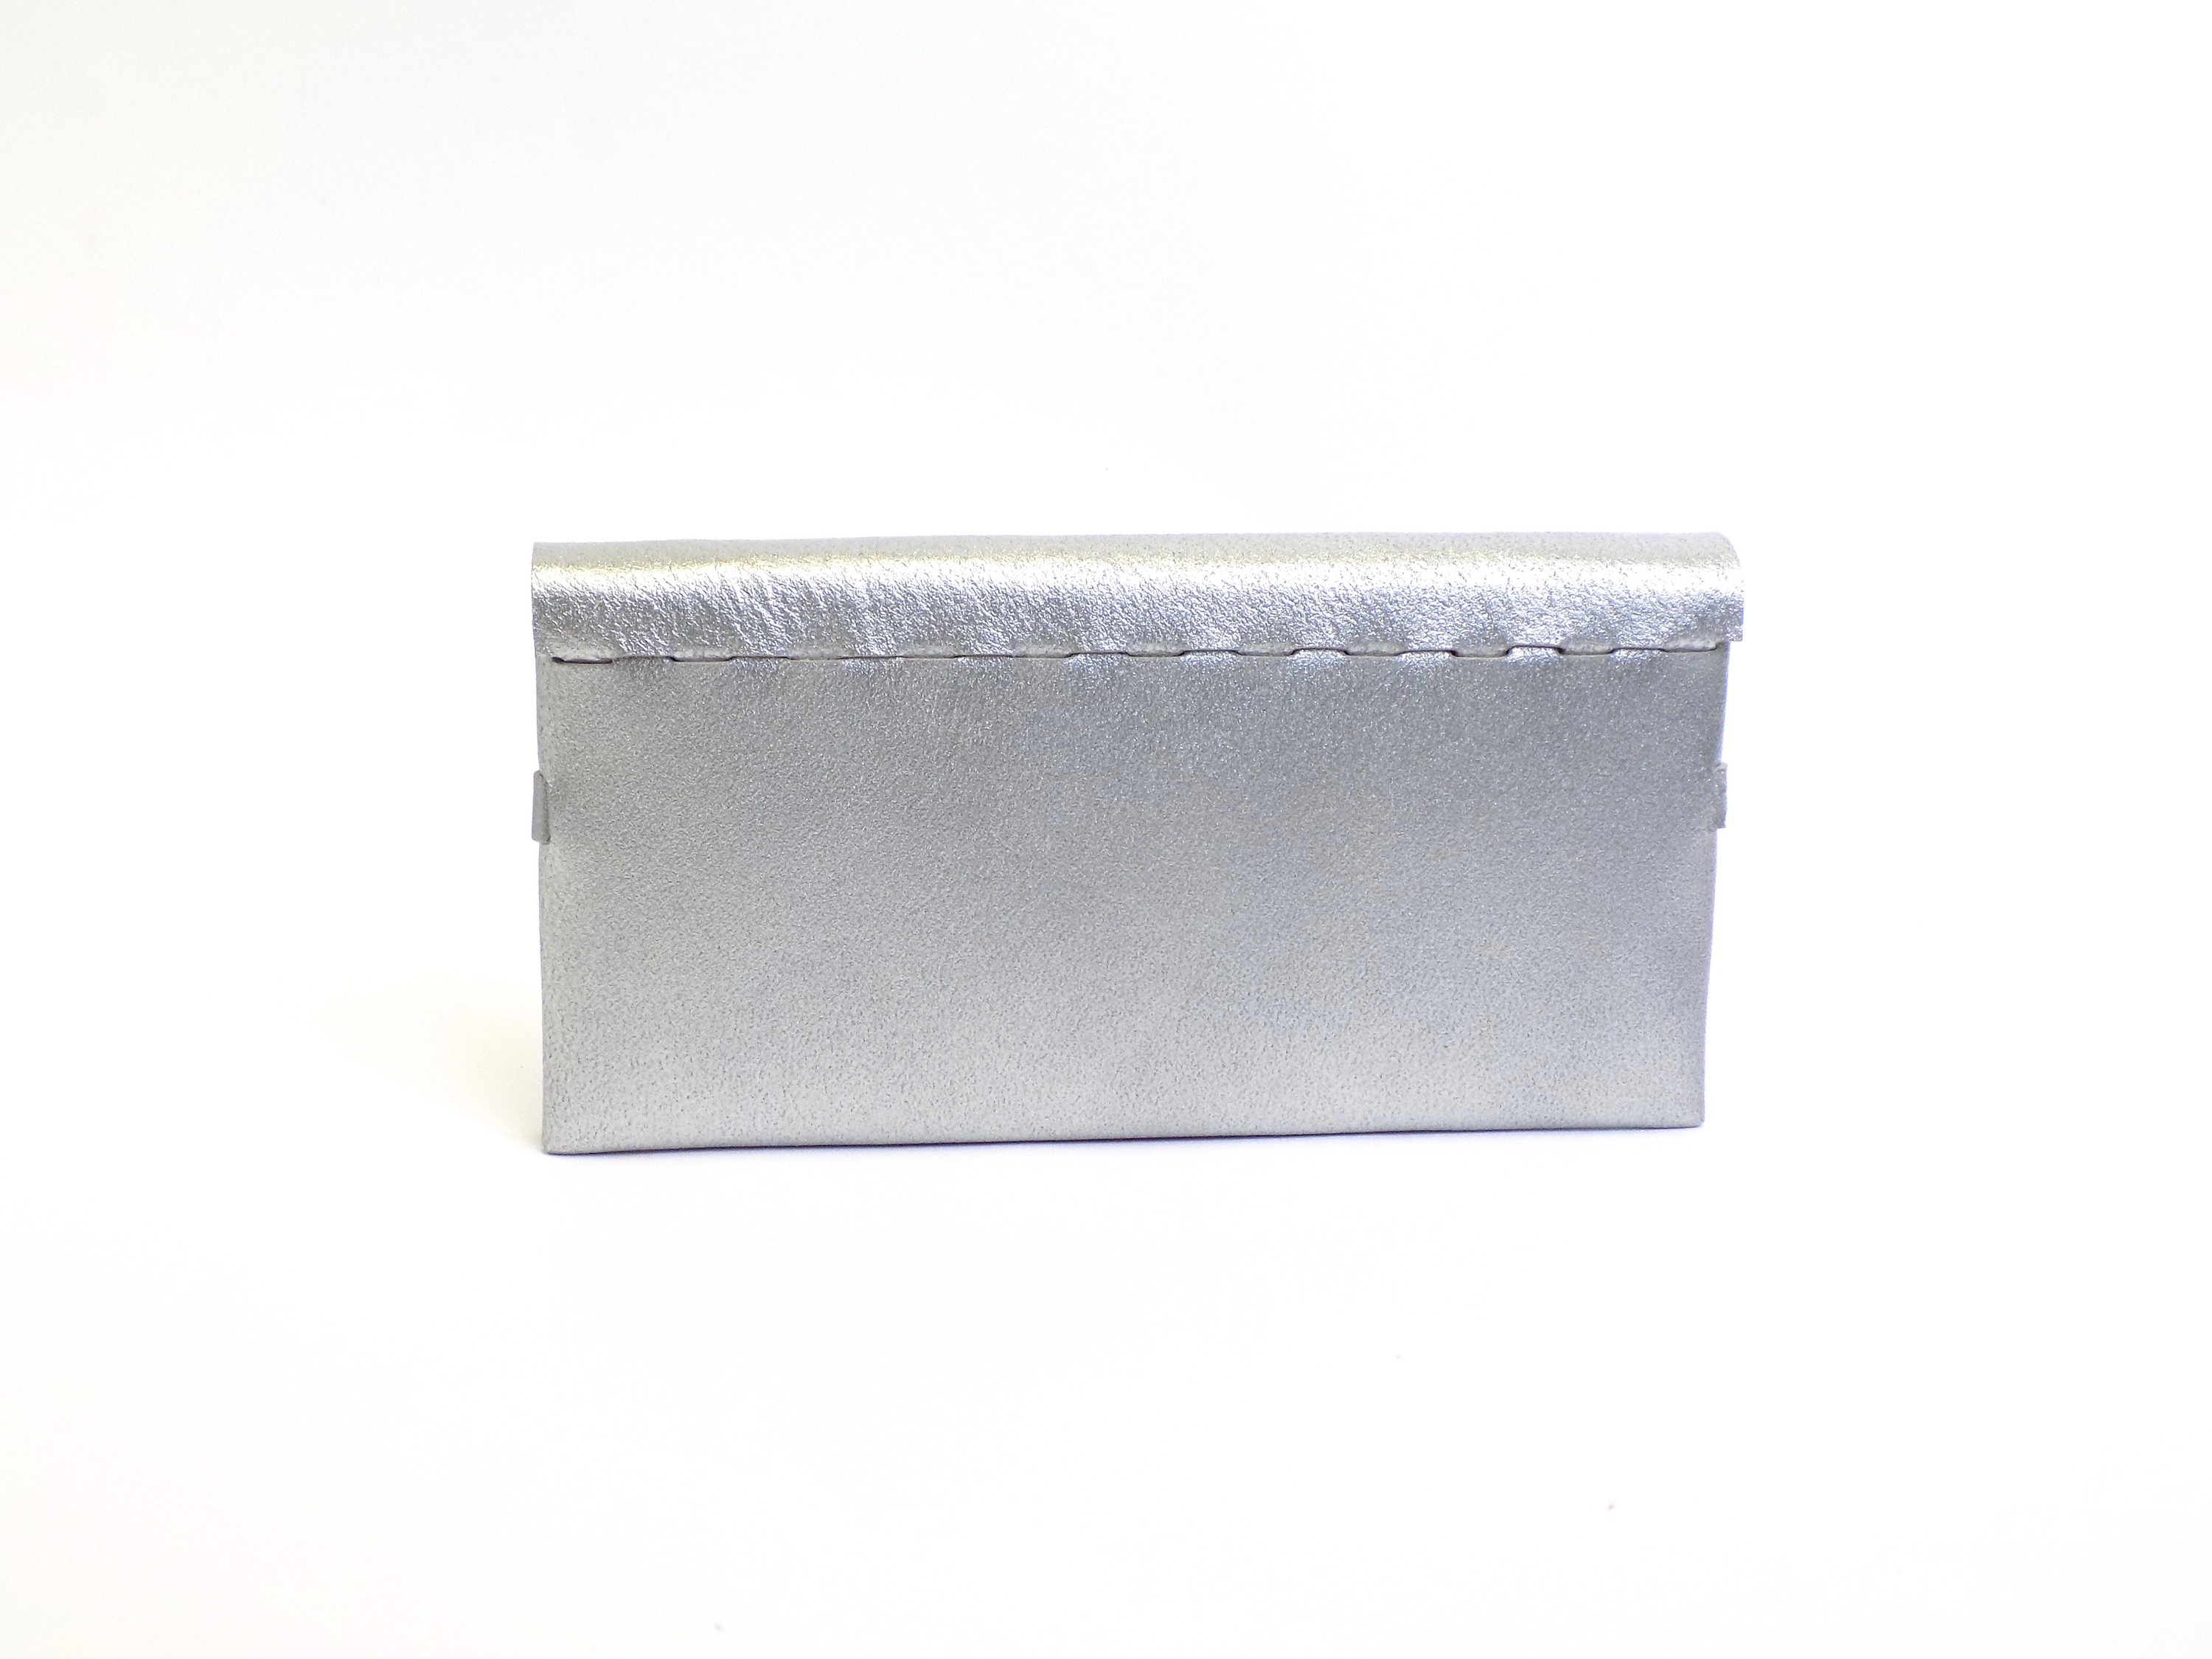 薄型二つ折り長財布 シルバー 革製 組み立て Iichi ハンドメイド クラフト作品 手仕事品の通販